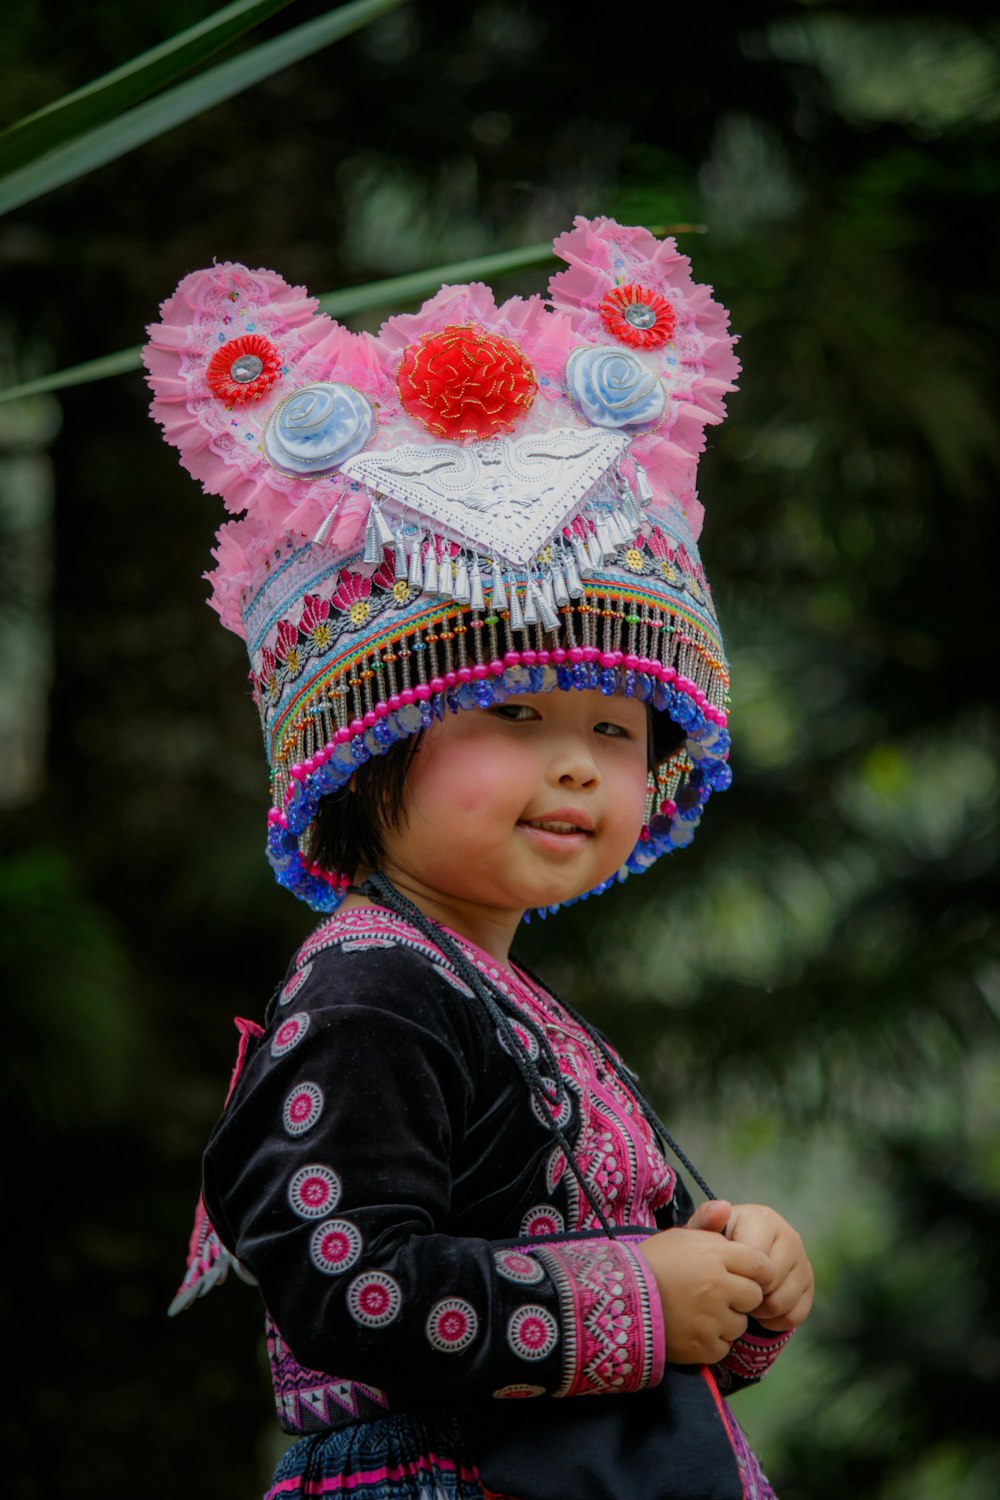 enfant en bas âge portant un chapeau de pompon perlé rose et bleu